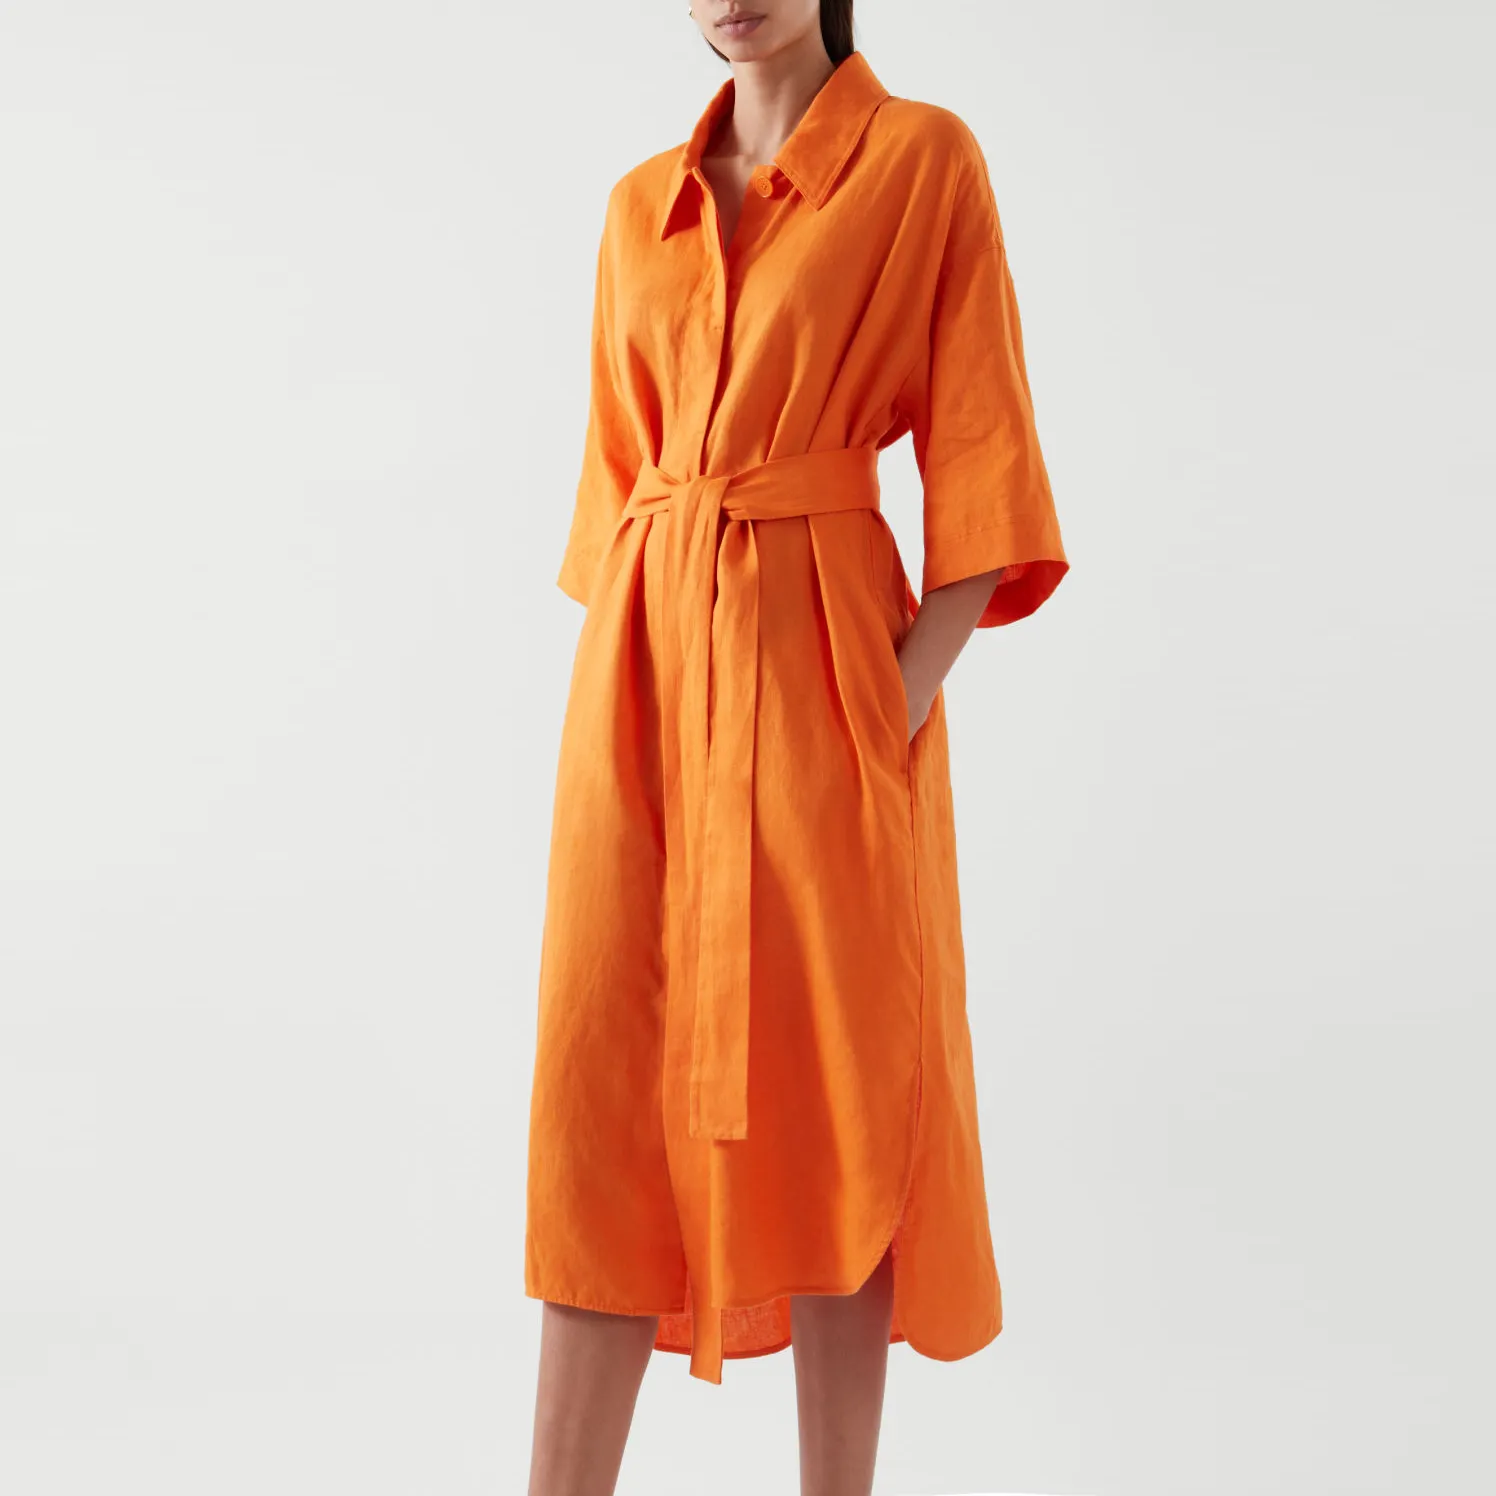 Garment manufacturer customized hot selling women's linen casual lapel front button short sleeved women's shirt dress